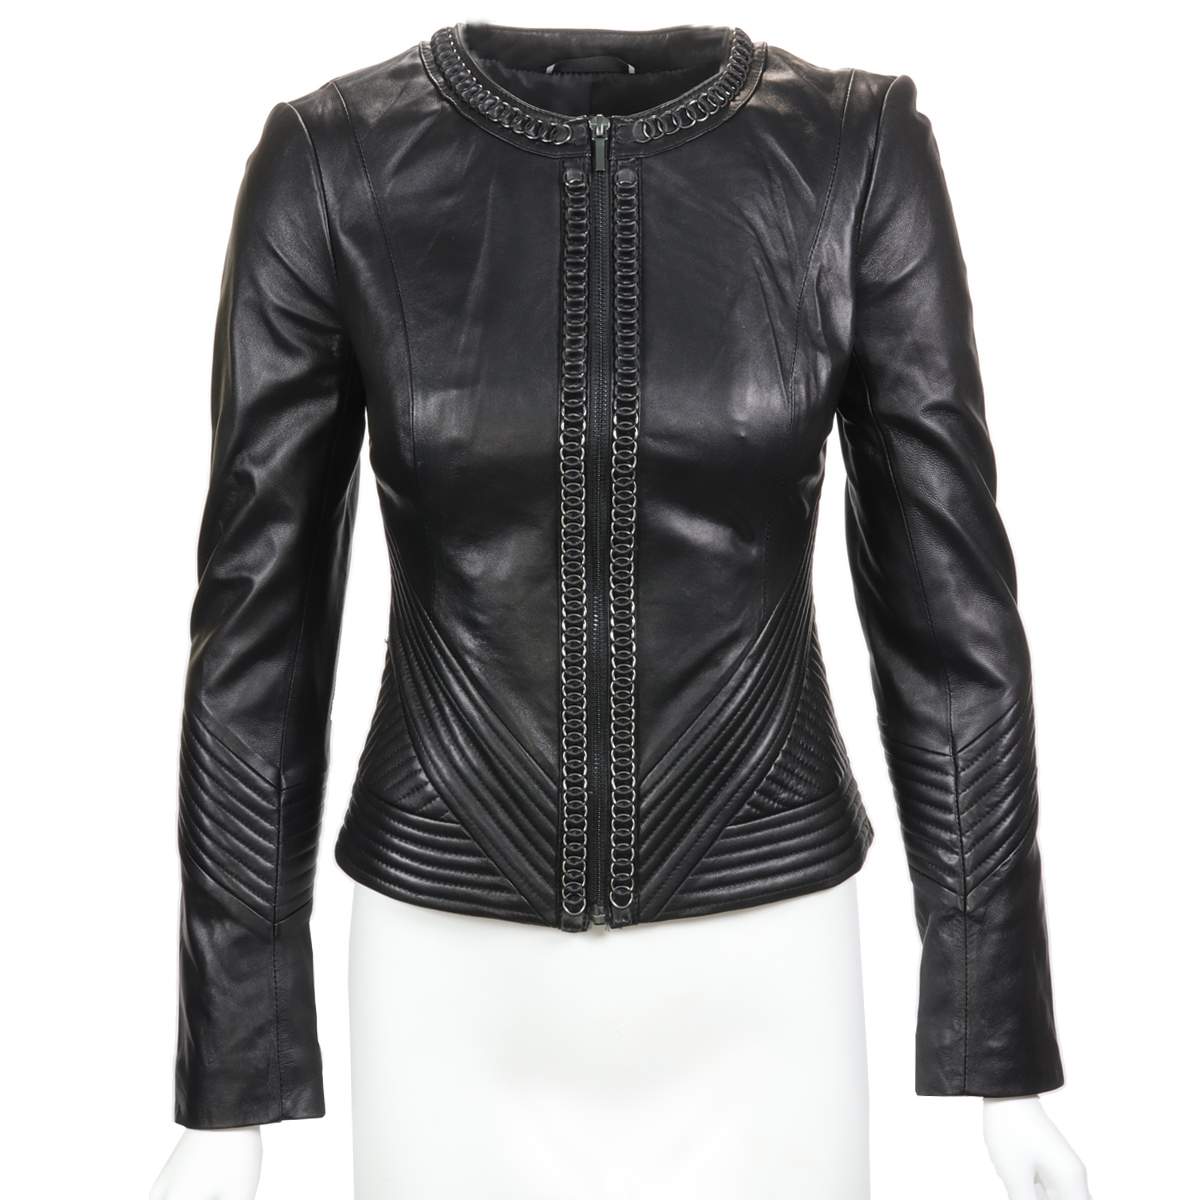 Black Embellished Leather Moto Jacket in CA, - Moda Italy Fashion